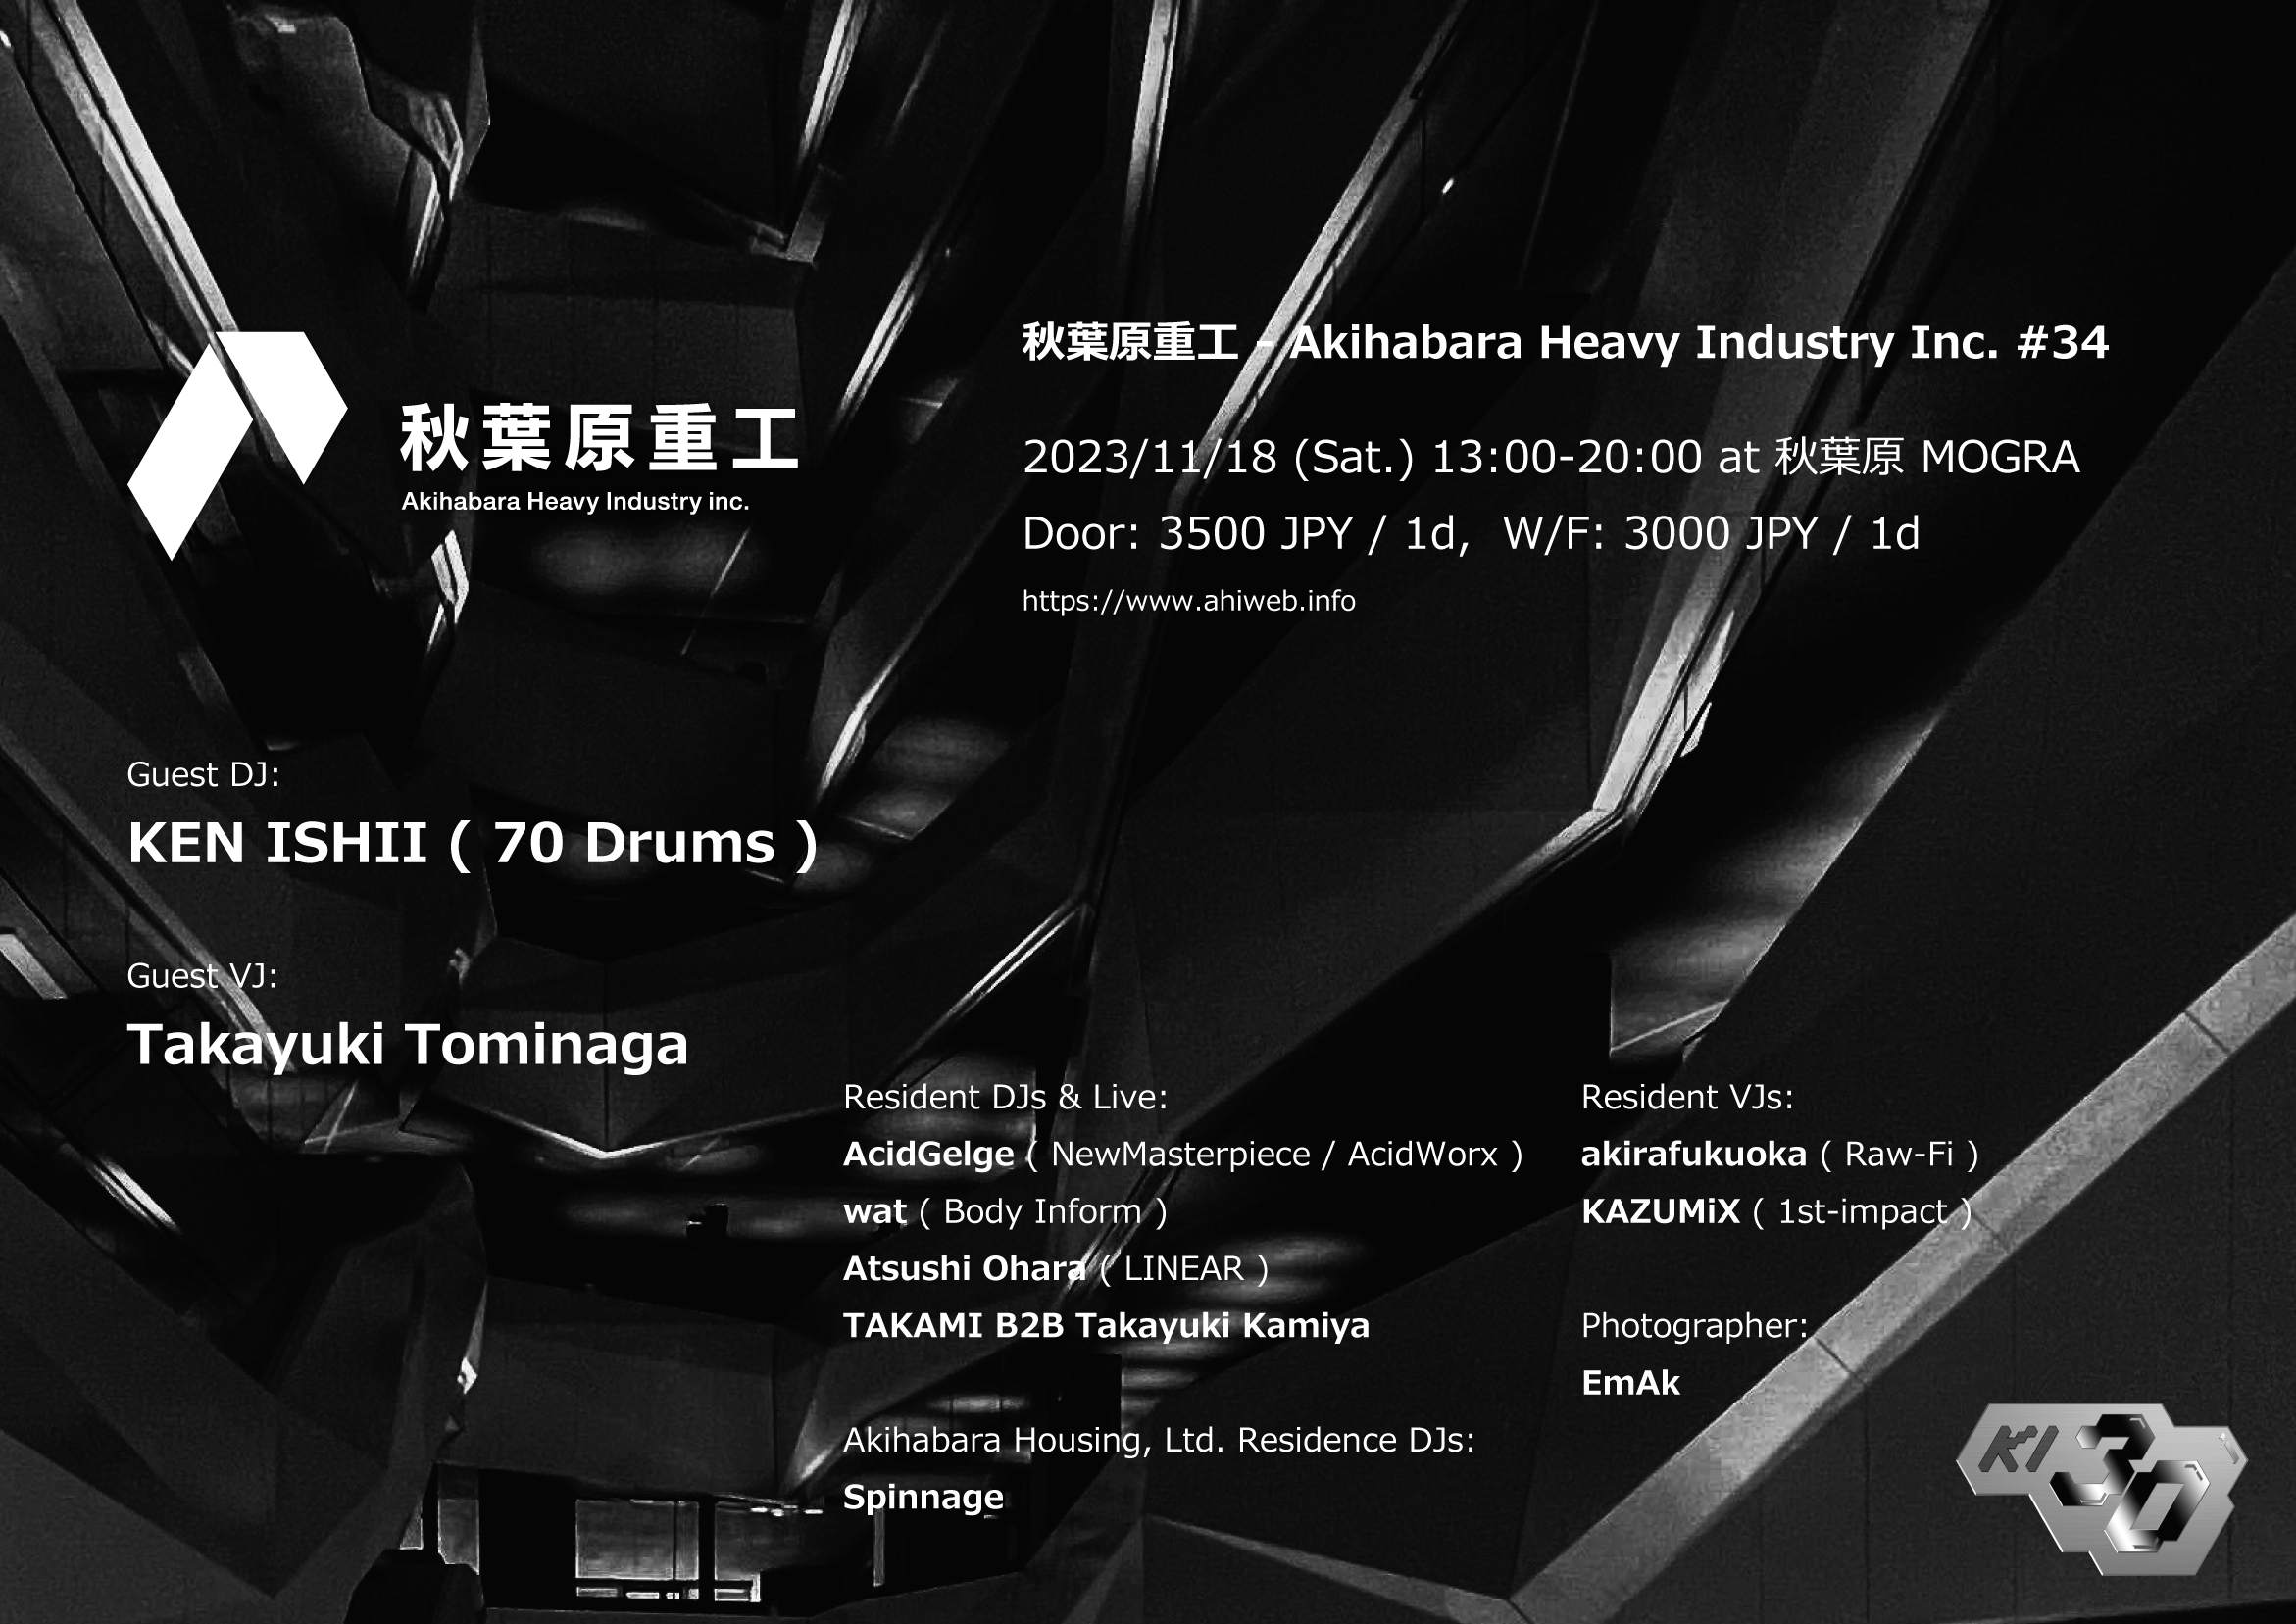 秋葉原重工 - Akihabara Heavy Industry Inc. #34 - フライヤー表